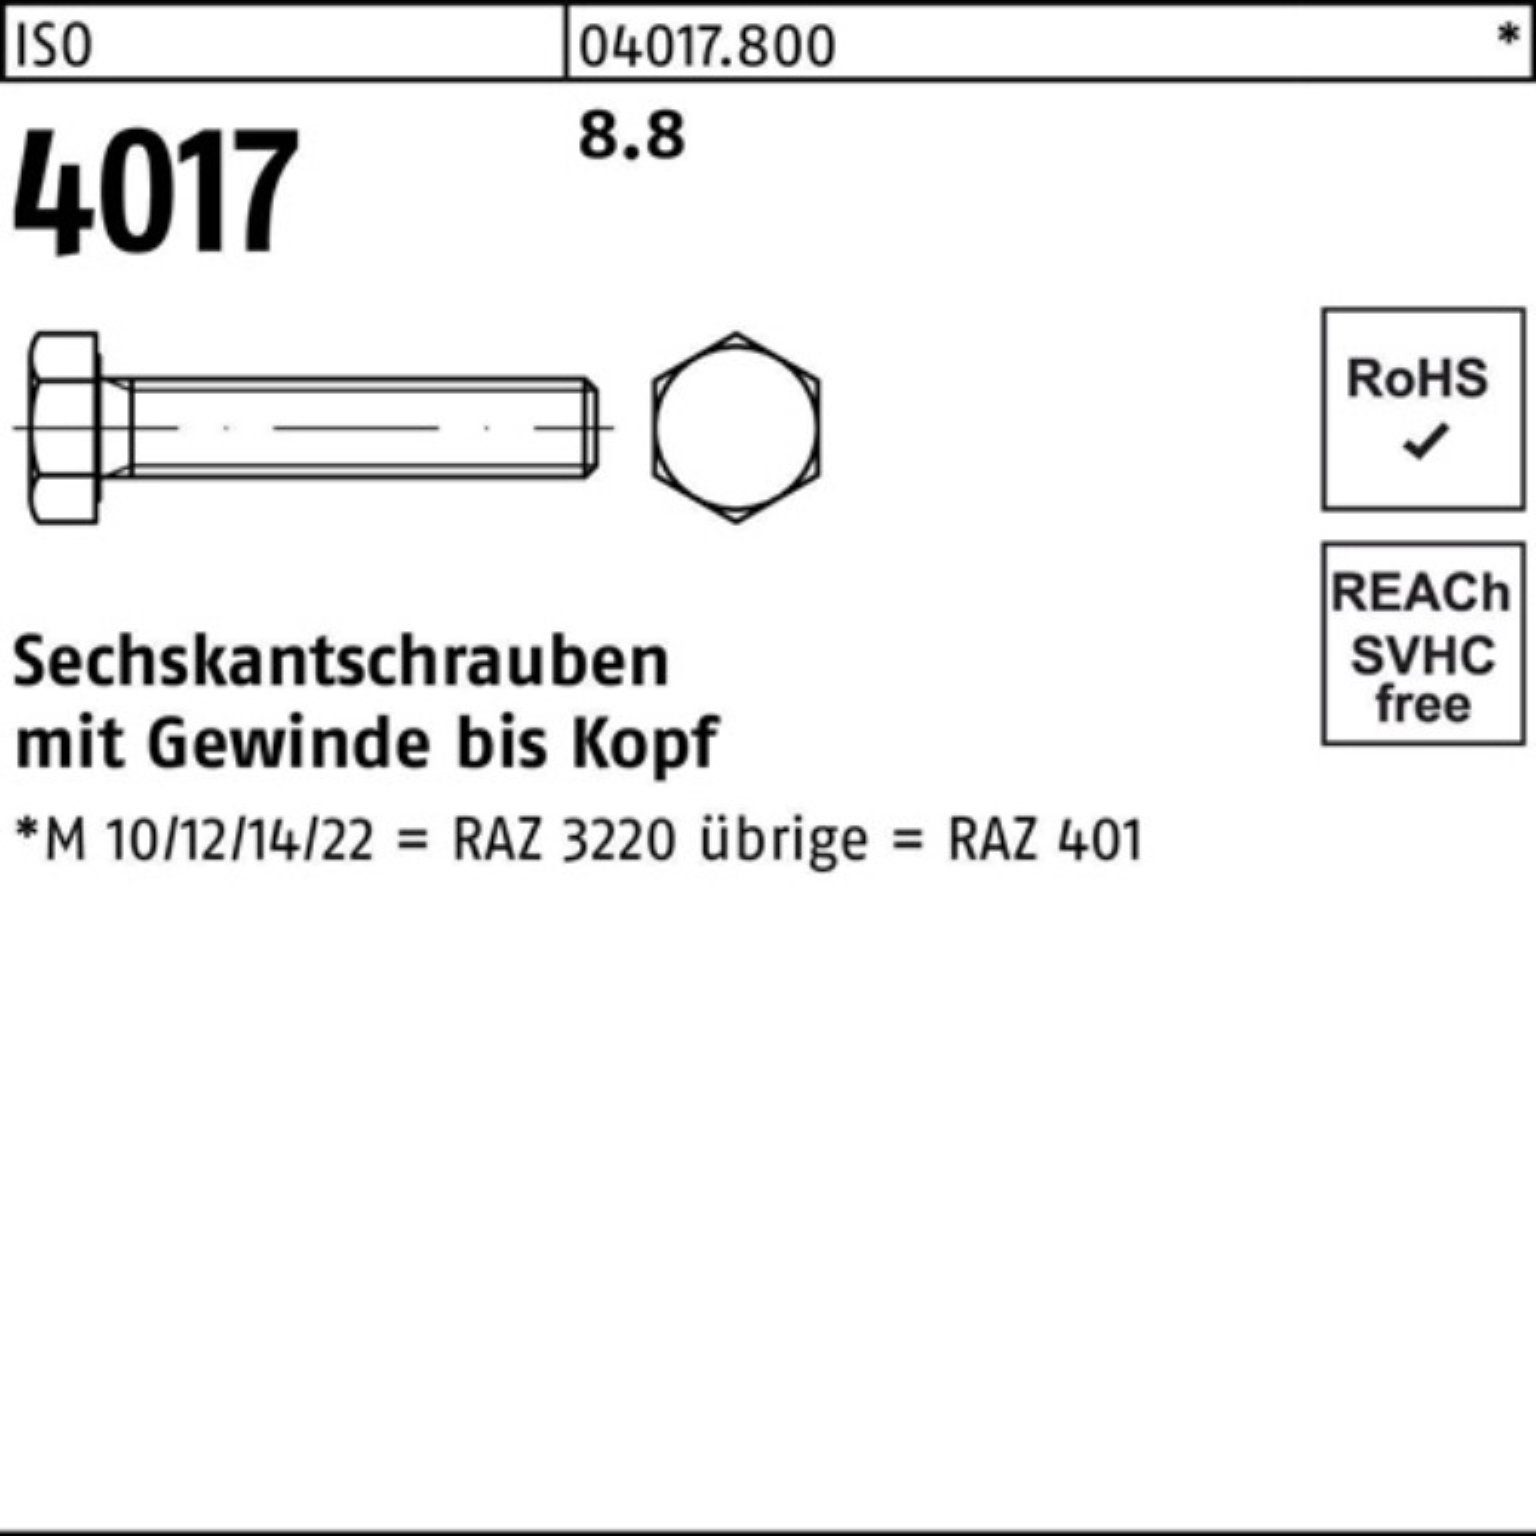 1 VG Sechskantschraube Bufab 100er ISO 170 M36x Pack 8.8 401 Sechskantschraube ISO 4017 Stück